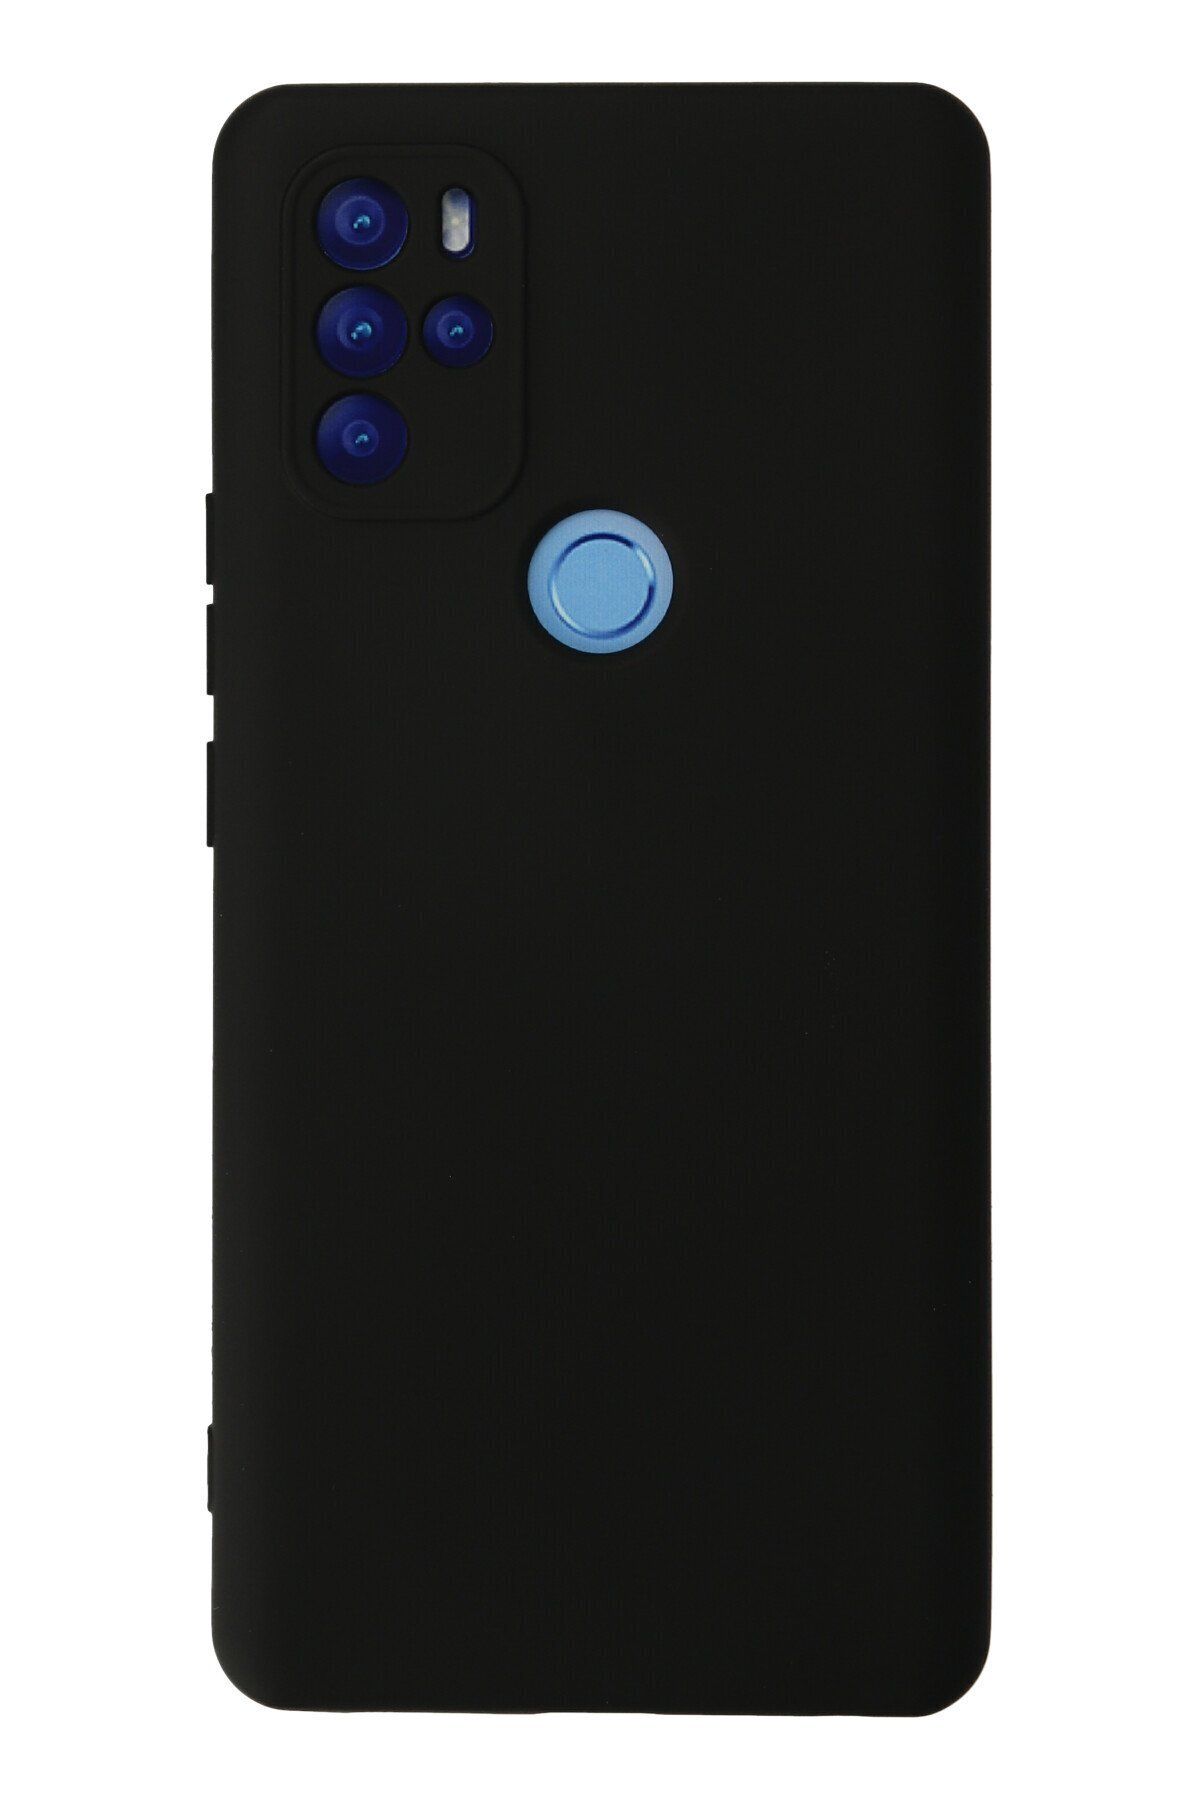 NewFace Omix X300 içi Süet Telefon Kılıfı - Soft Yüzey Kadife Silikon Kapak - Siyah